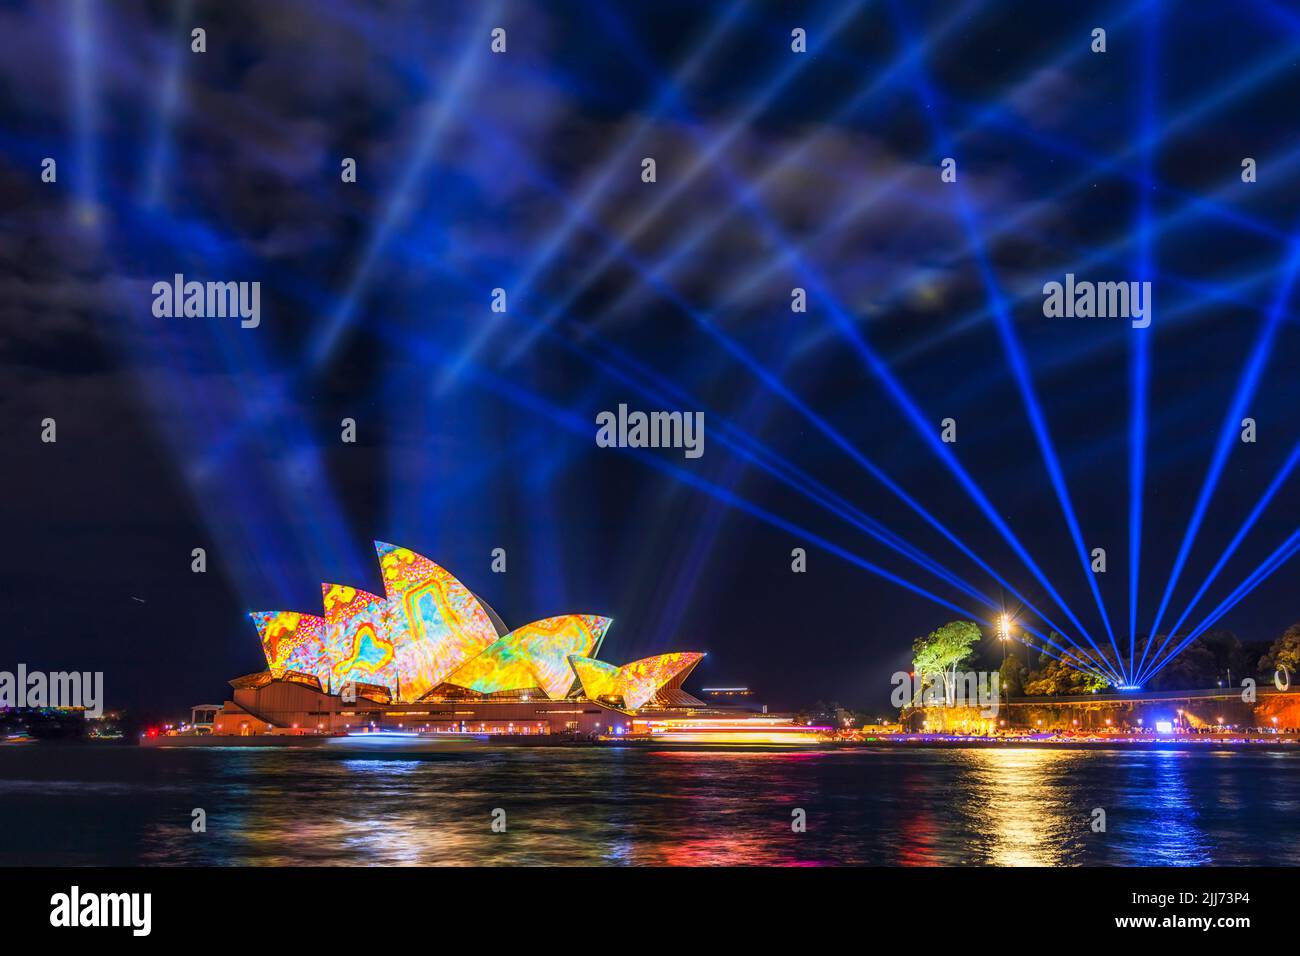 Las luces e ideas de Sydney vívidas muestran láser sobre el distrito central de negocios de la ciudad de Sydney Landmards en el puerto de Landmard por la noche. Foto de stock